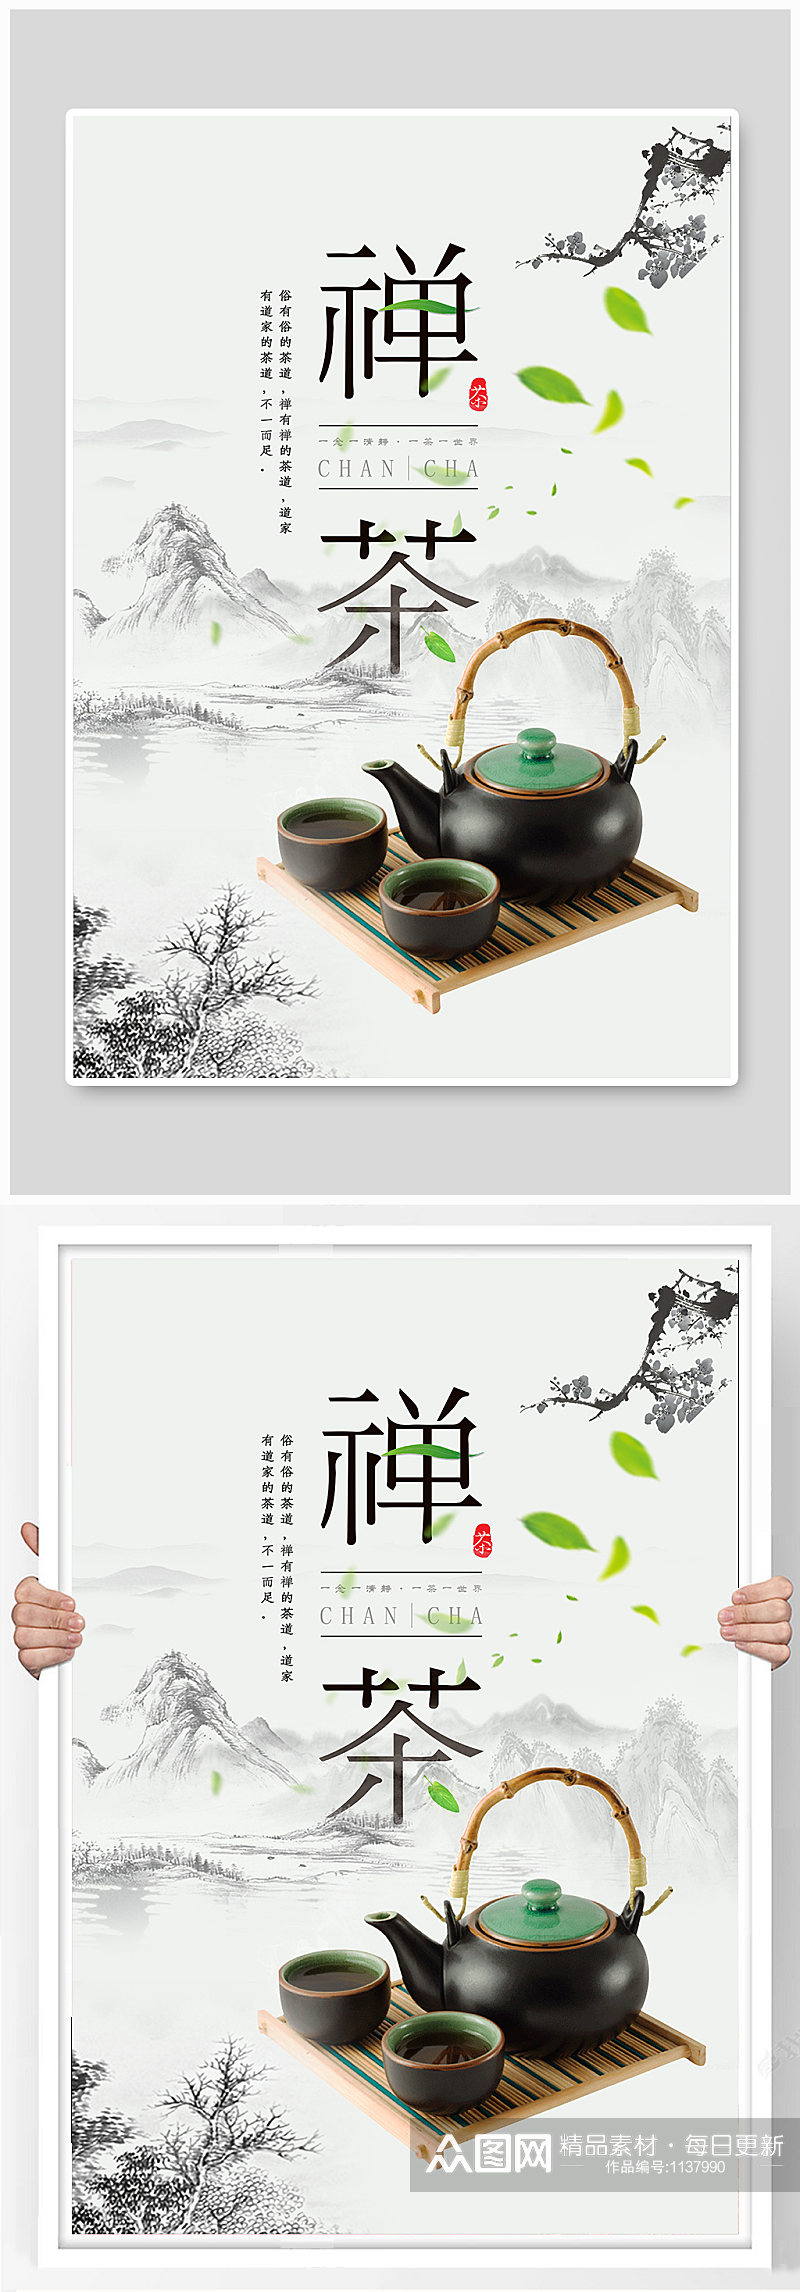 中国水墨山水古风禅茶茶文化茶叶宣传海报素材